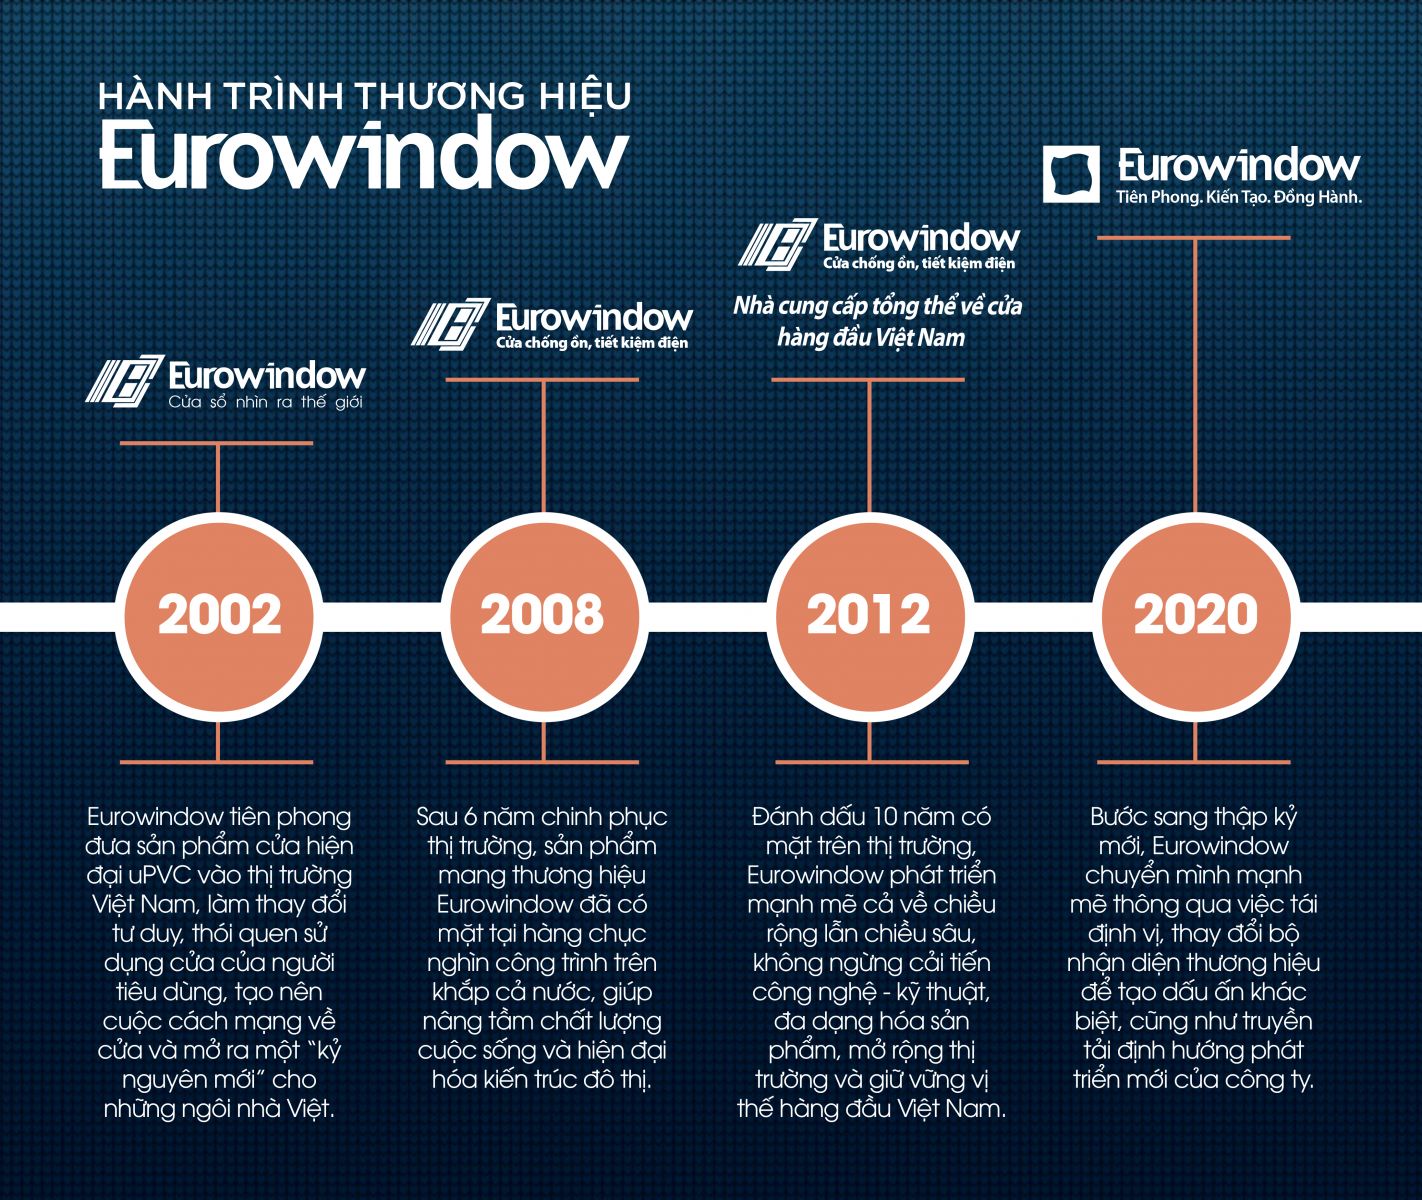 Hành trình thương hiệu Eurowindow